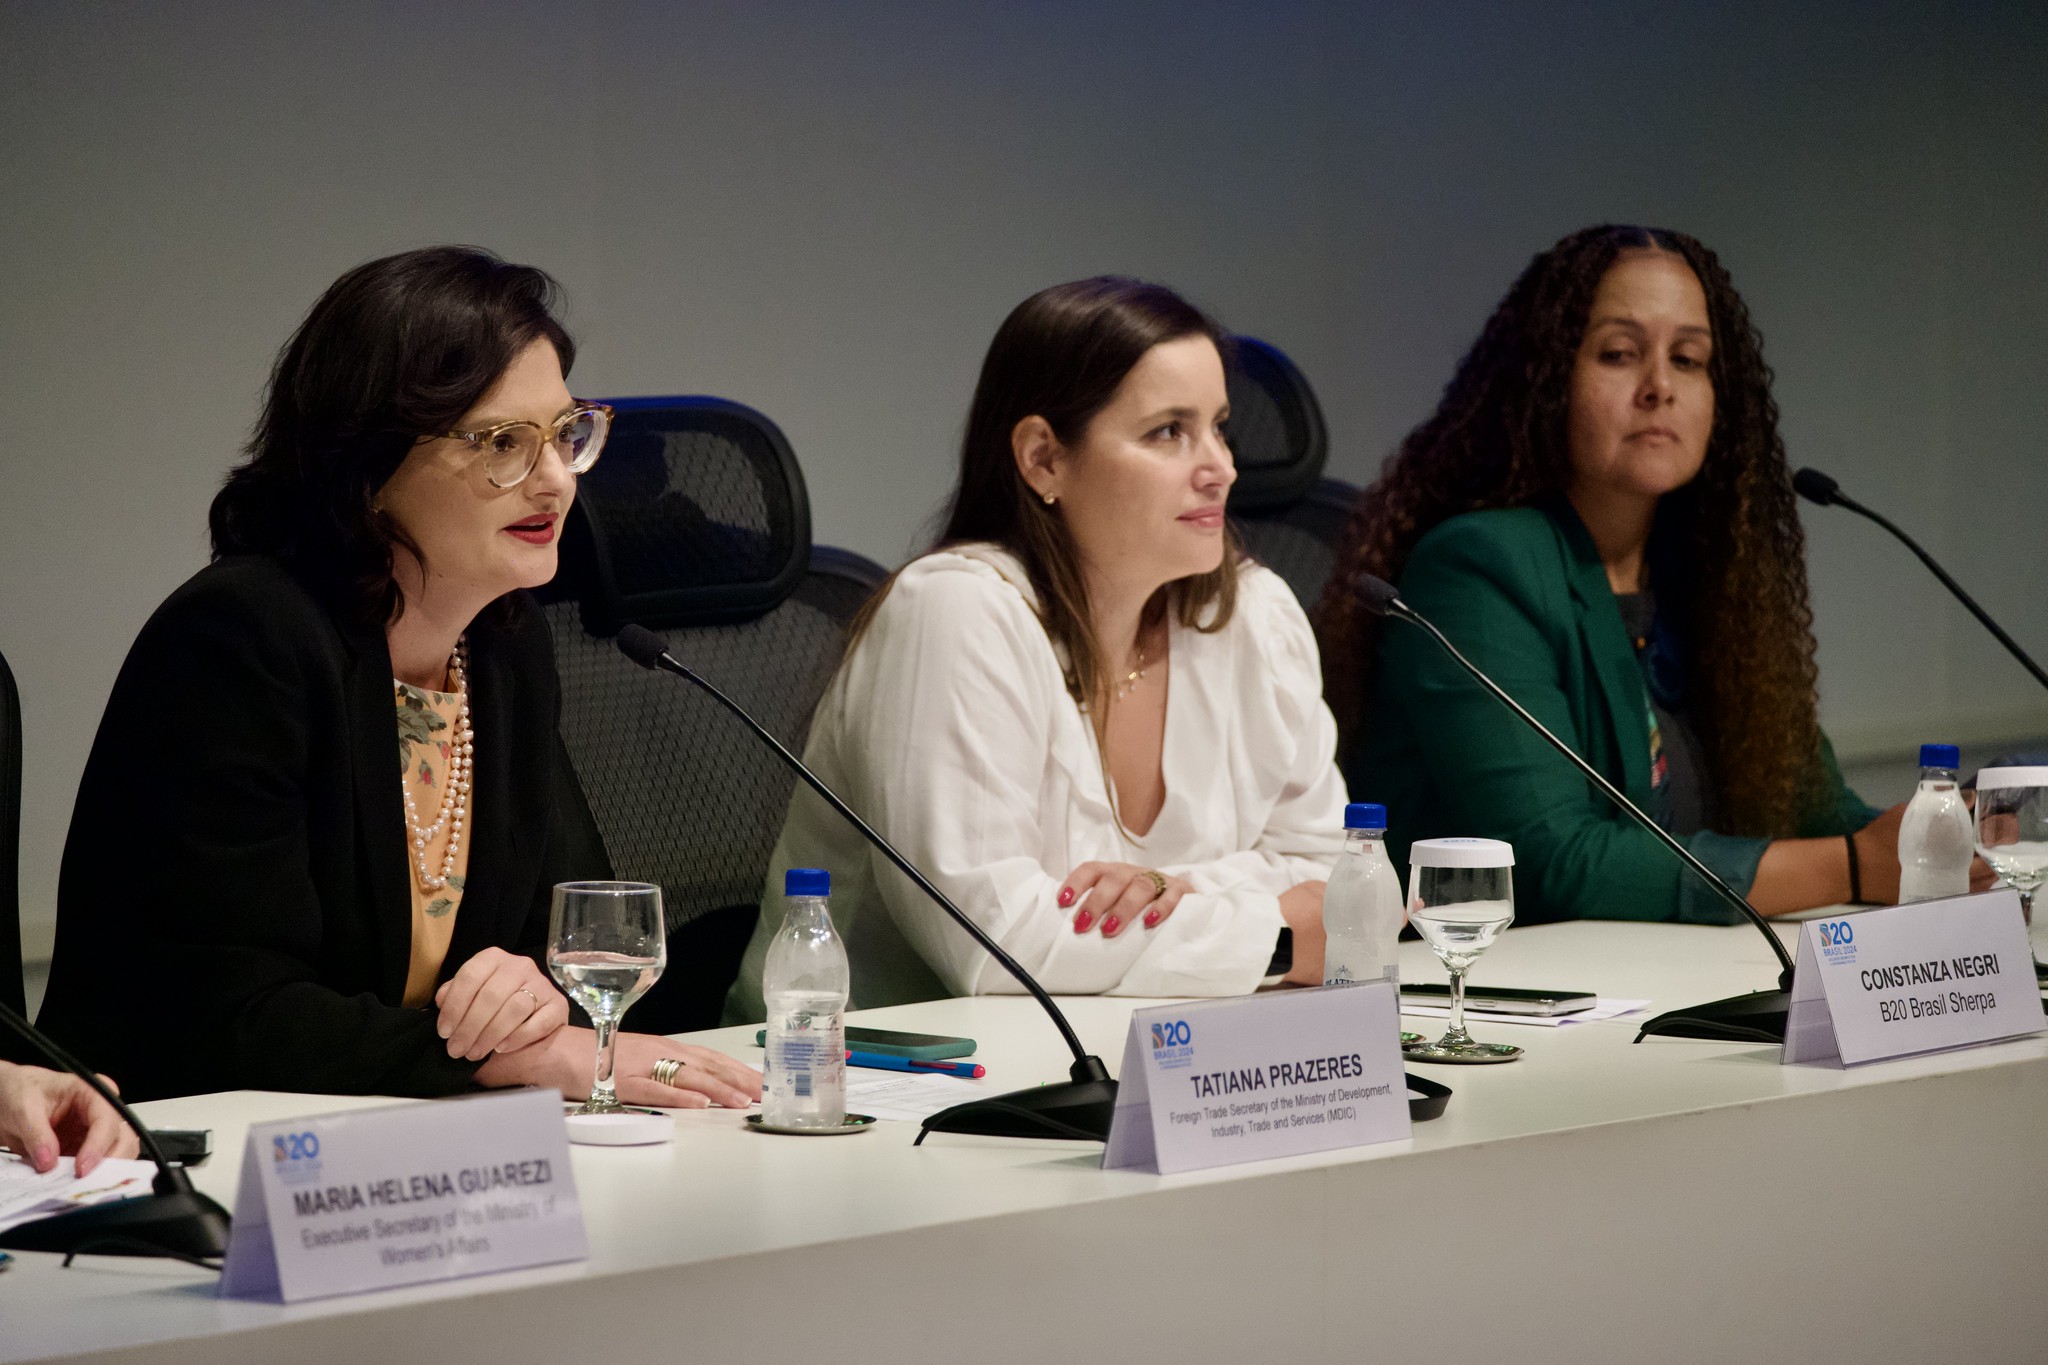 From left to right, Tatiana Prazeres (G20), Constanza Negri (B20), and Janaína Gama (W20). Photo: Publicity/CNI